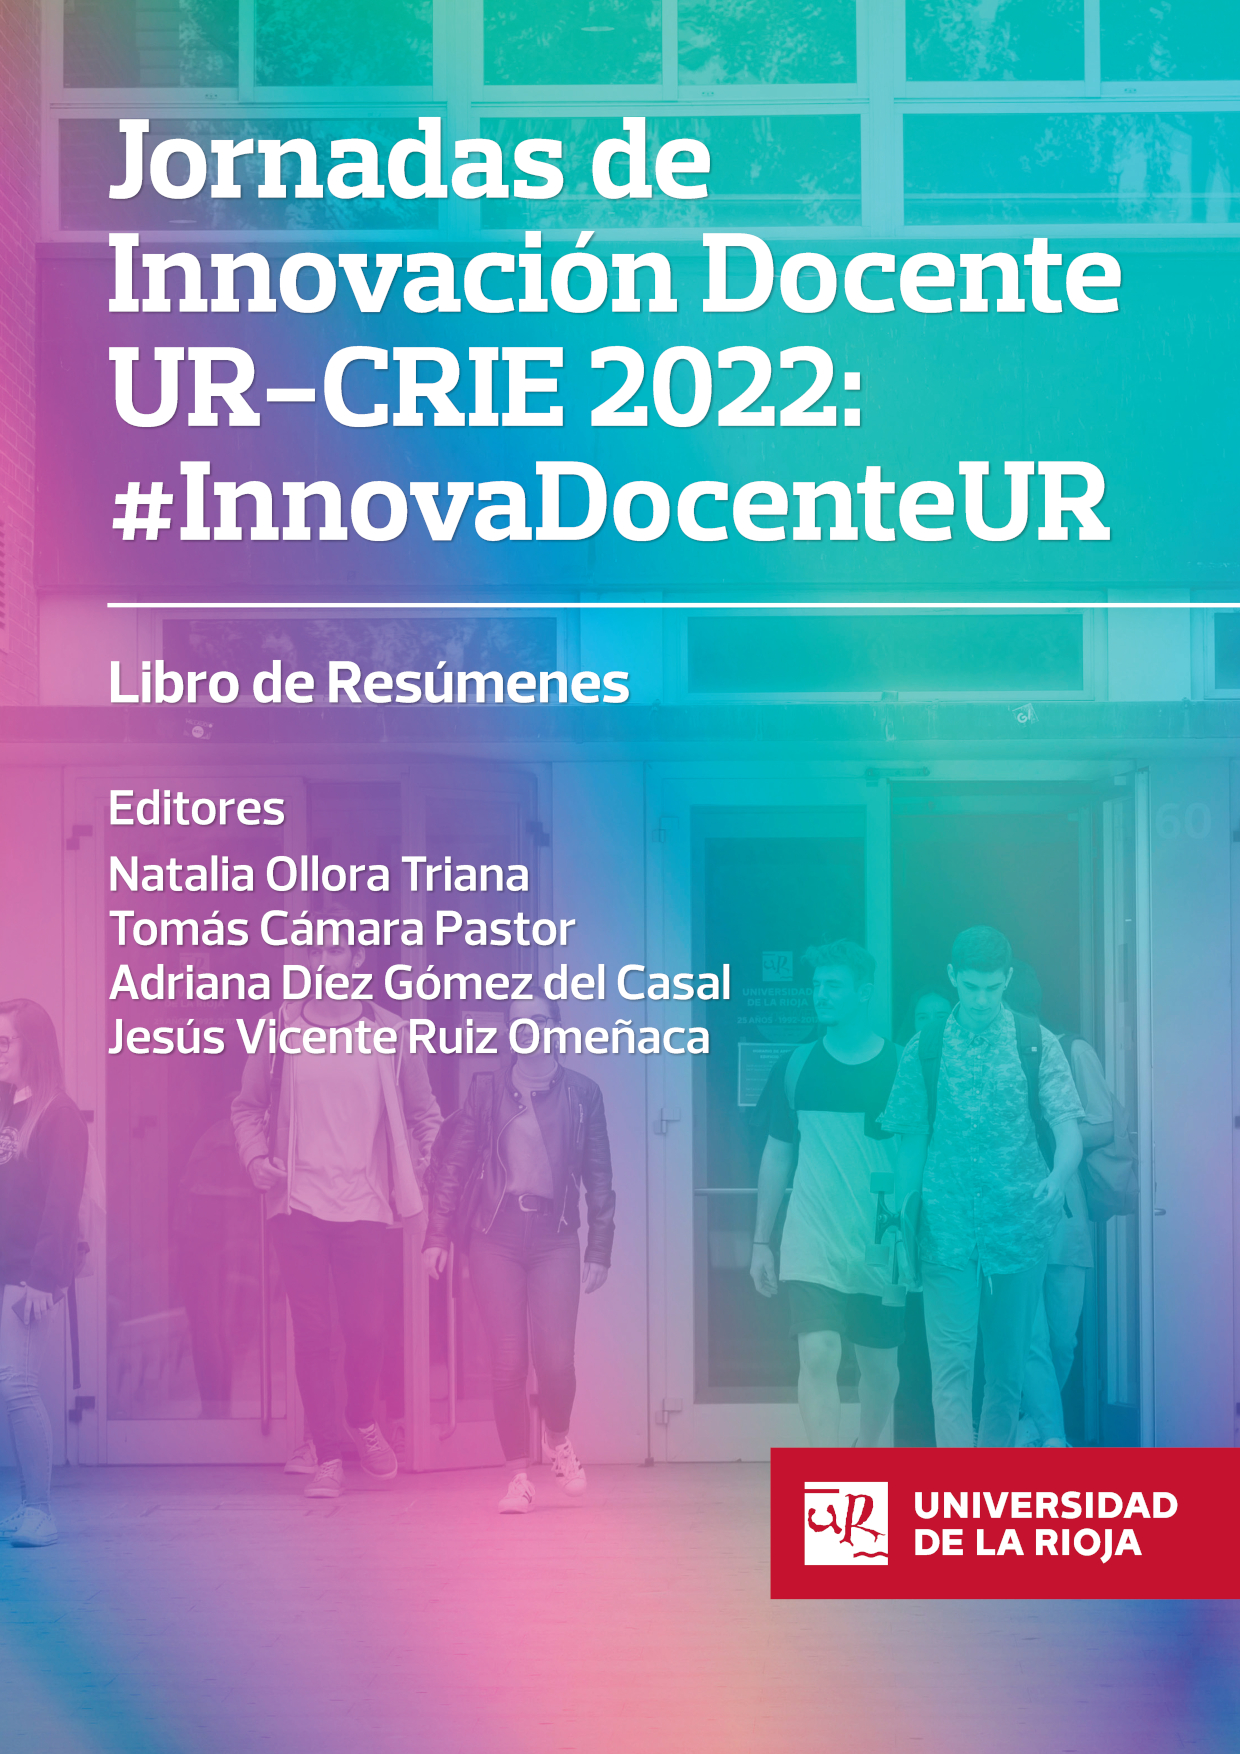 Imagen de portada del libro Jornadas de Innovación Docente UR-CRIE 2022